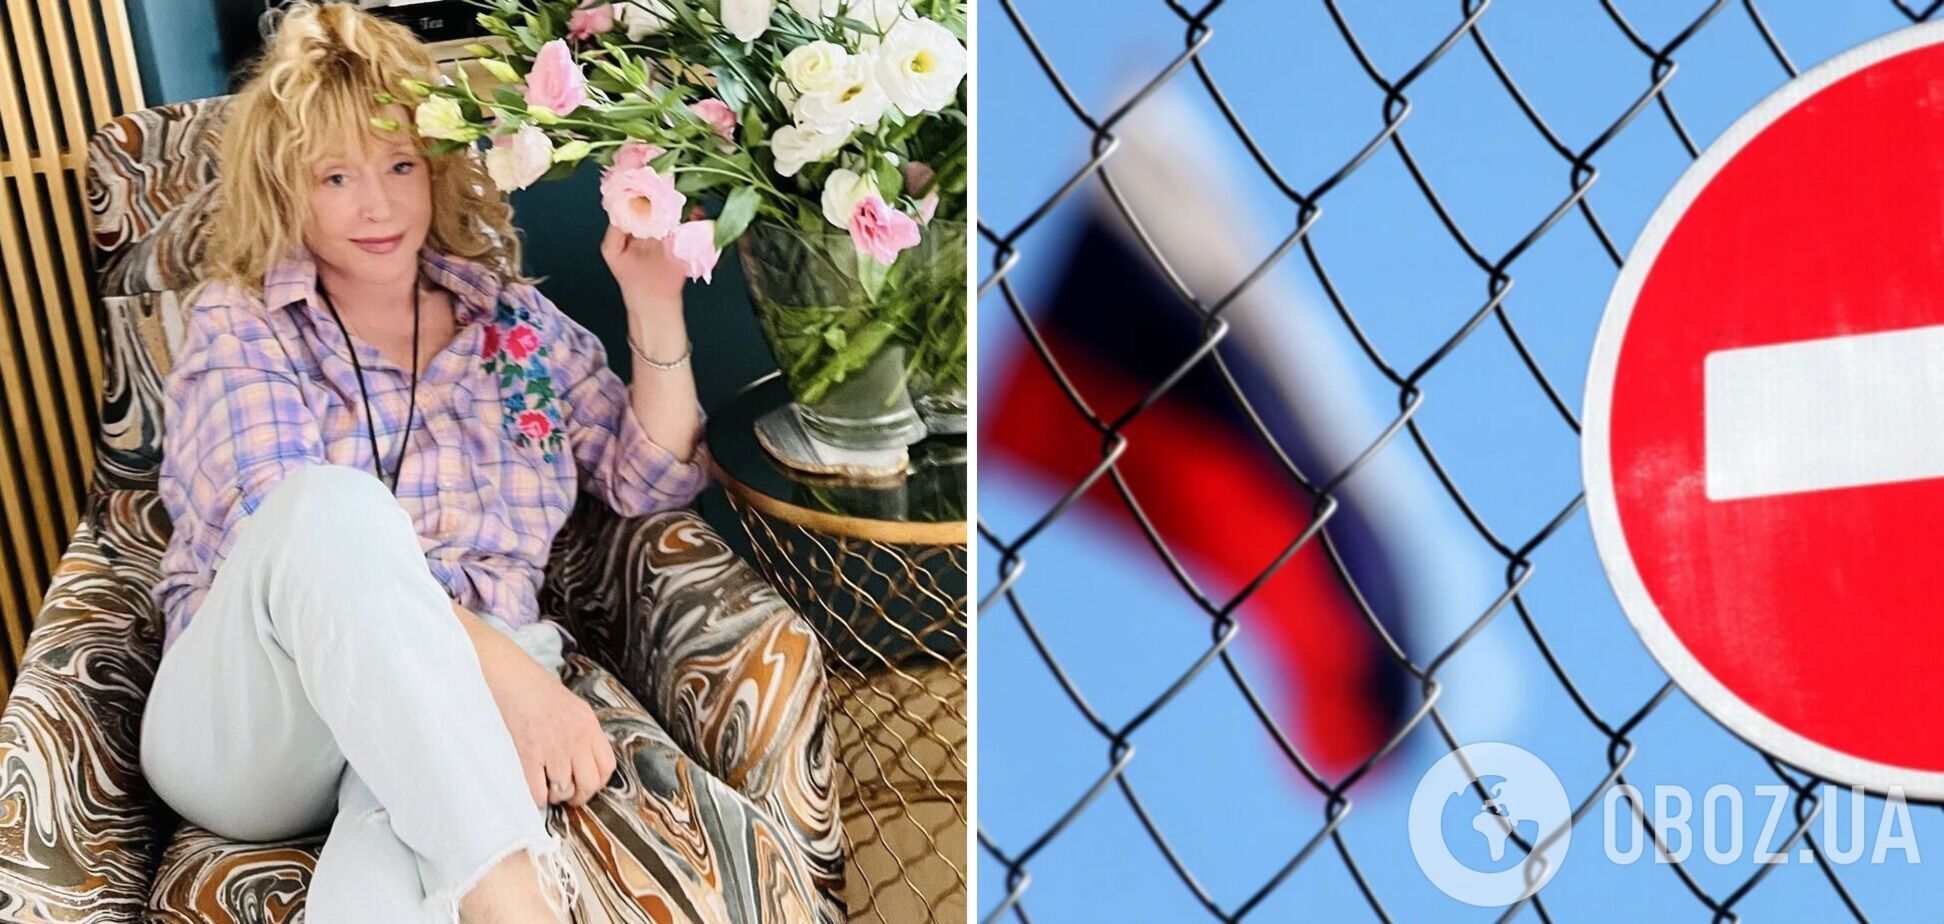 Пугачева ответила на травлю ее семьи в России, потролив хейтеров: Господи, прости этих тварей и продажных лицемеров